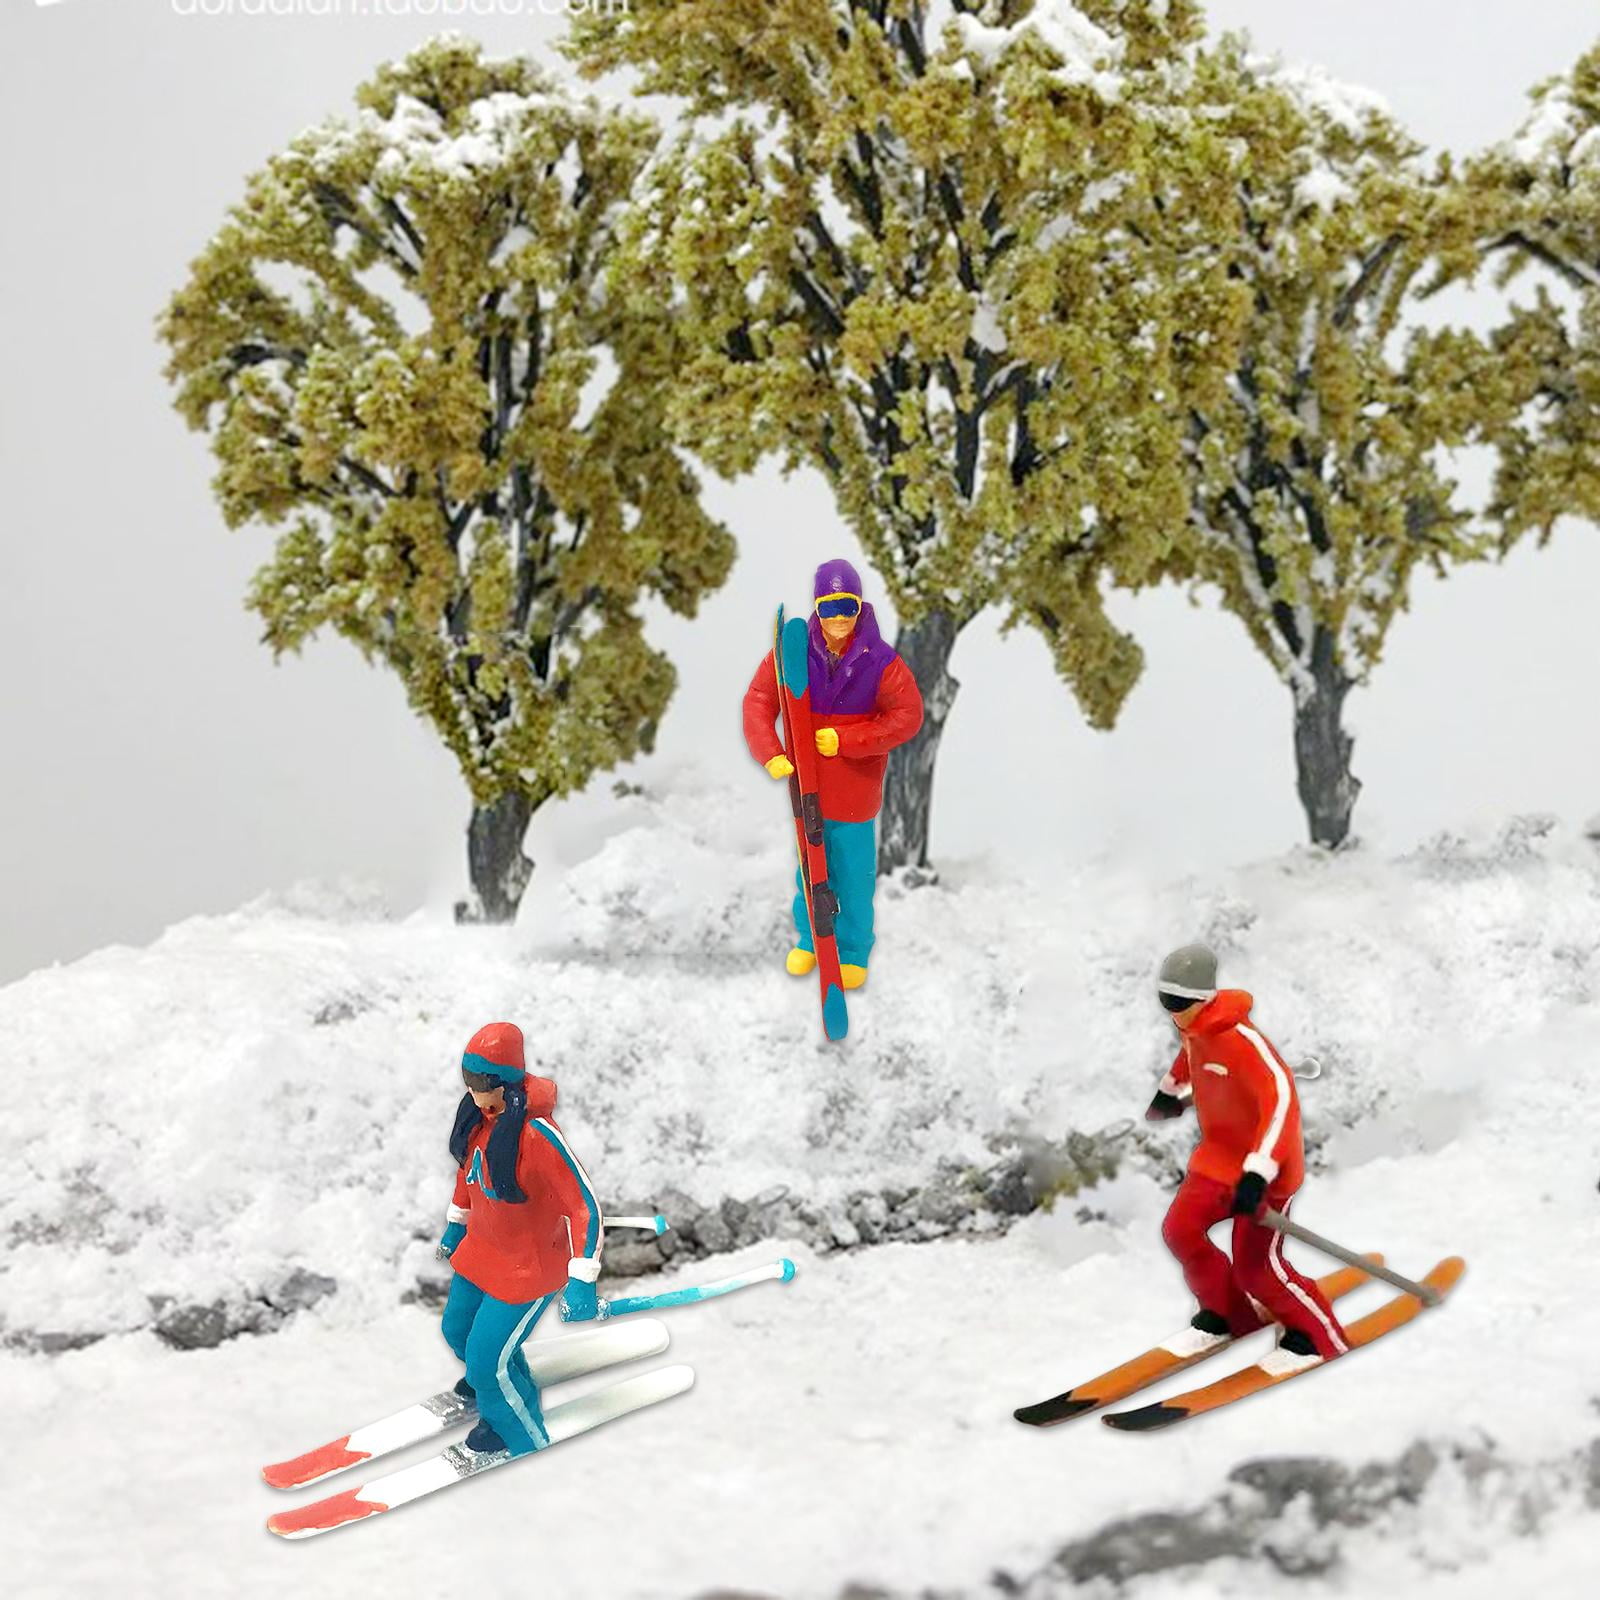 Ski Miniature De Skieur Sur Un Gâteau Image stock - Image du fête, skieur:  104936649